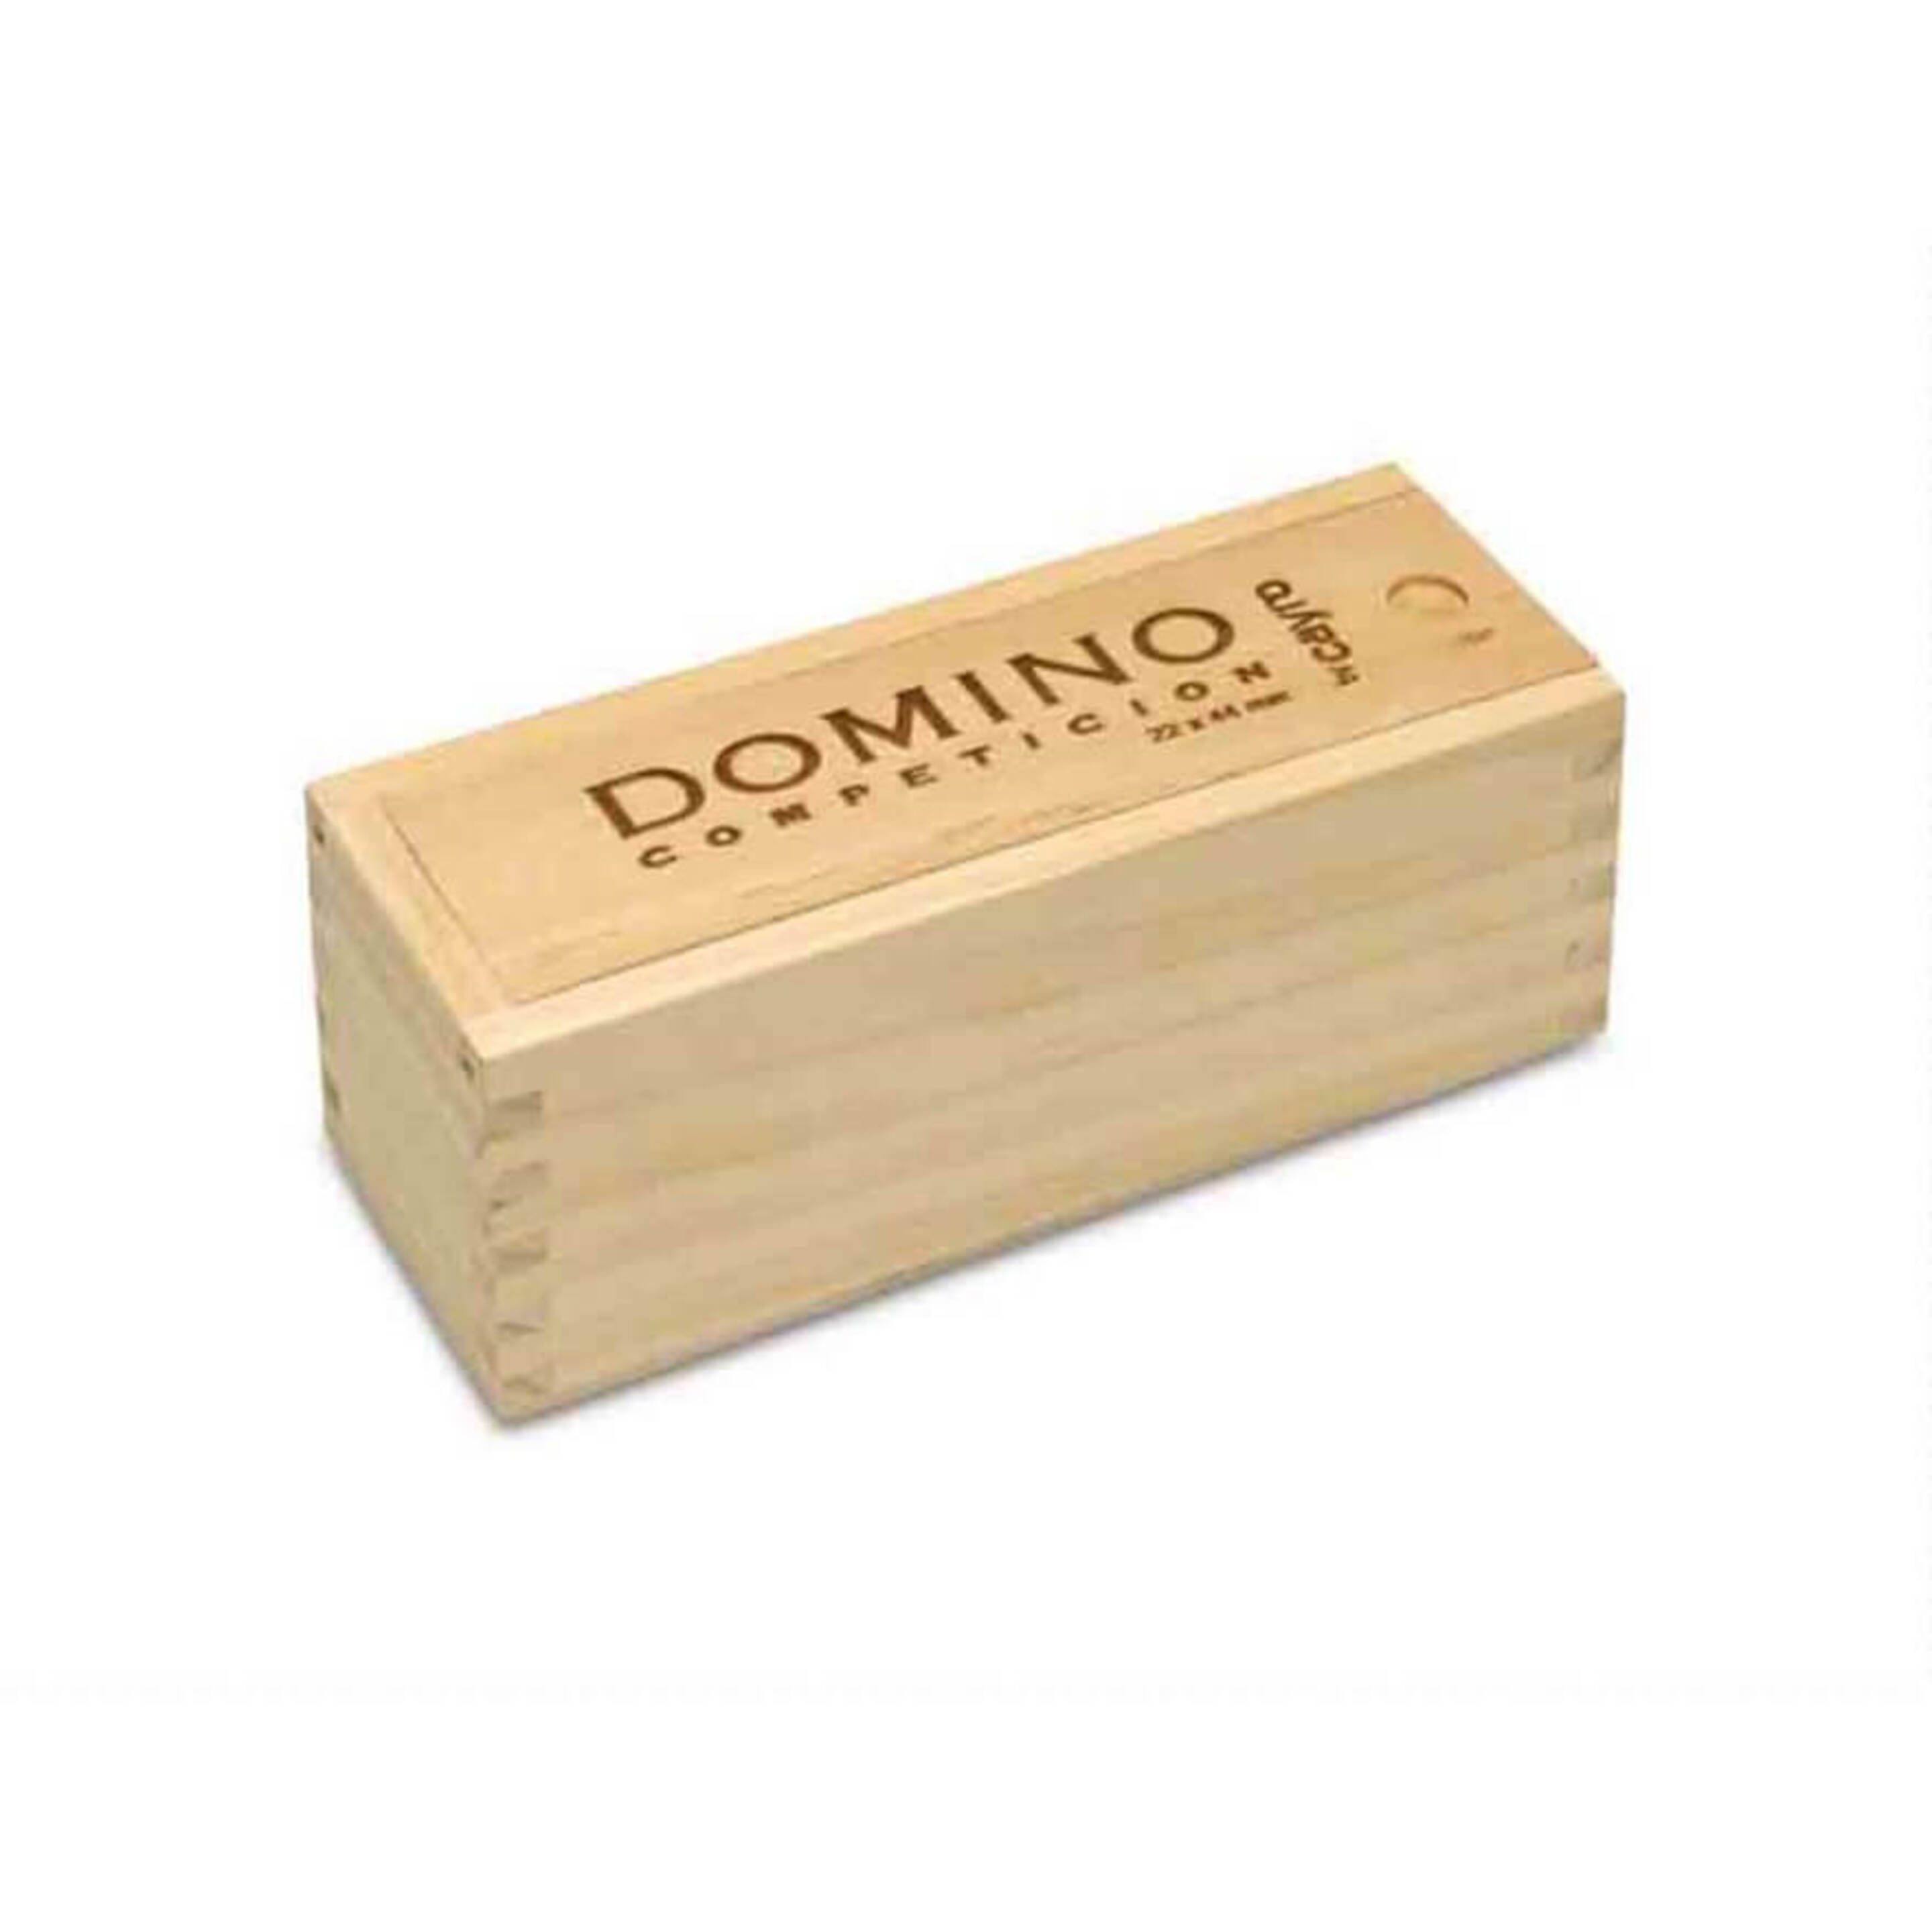 Domino Competicion Caja Madera - multicolor - 